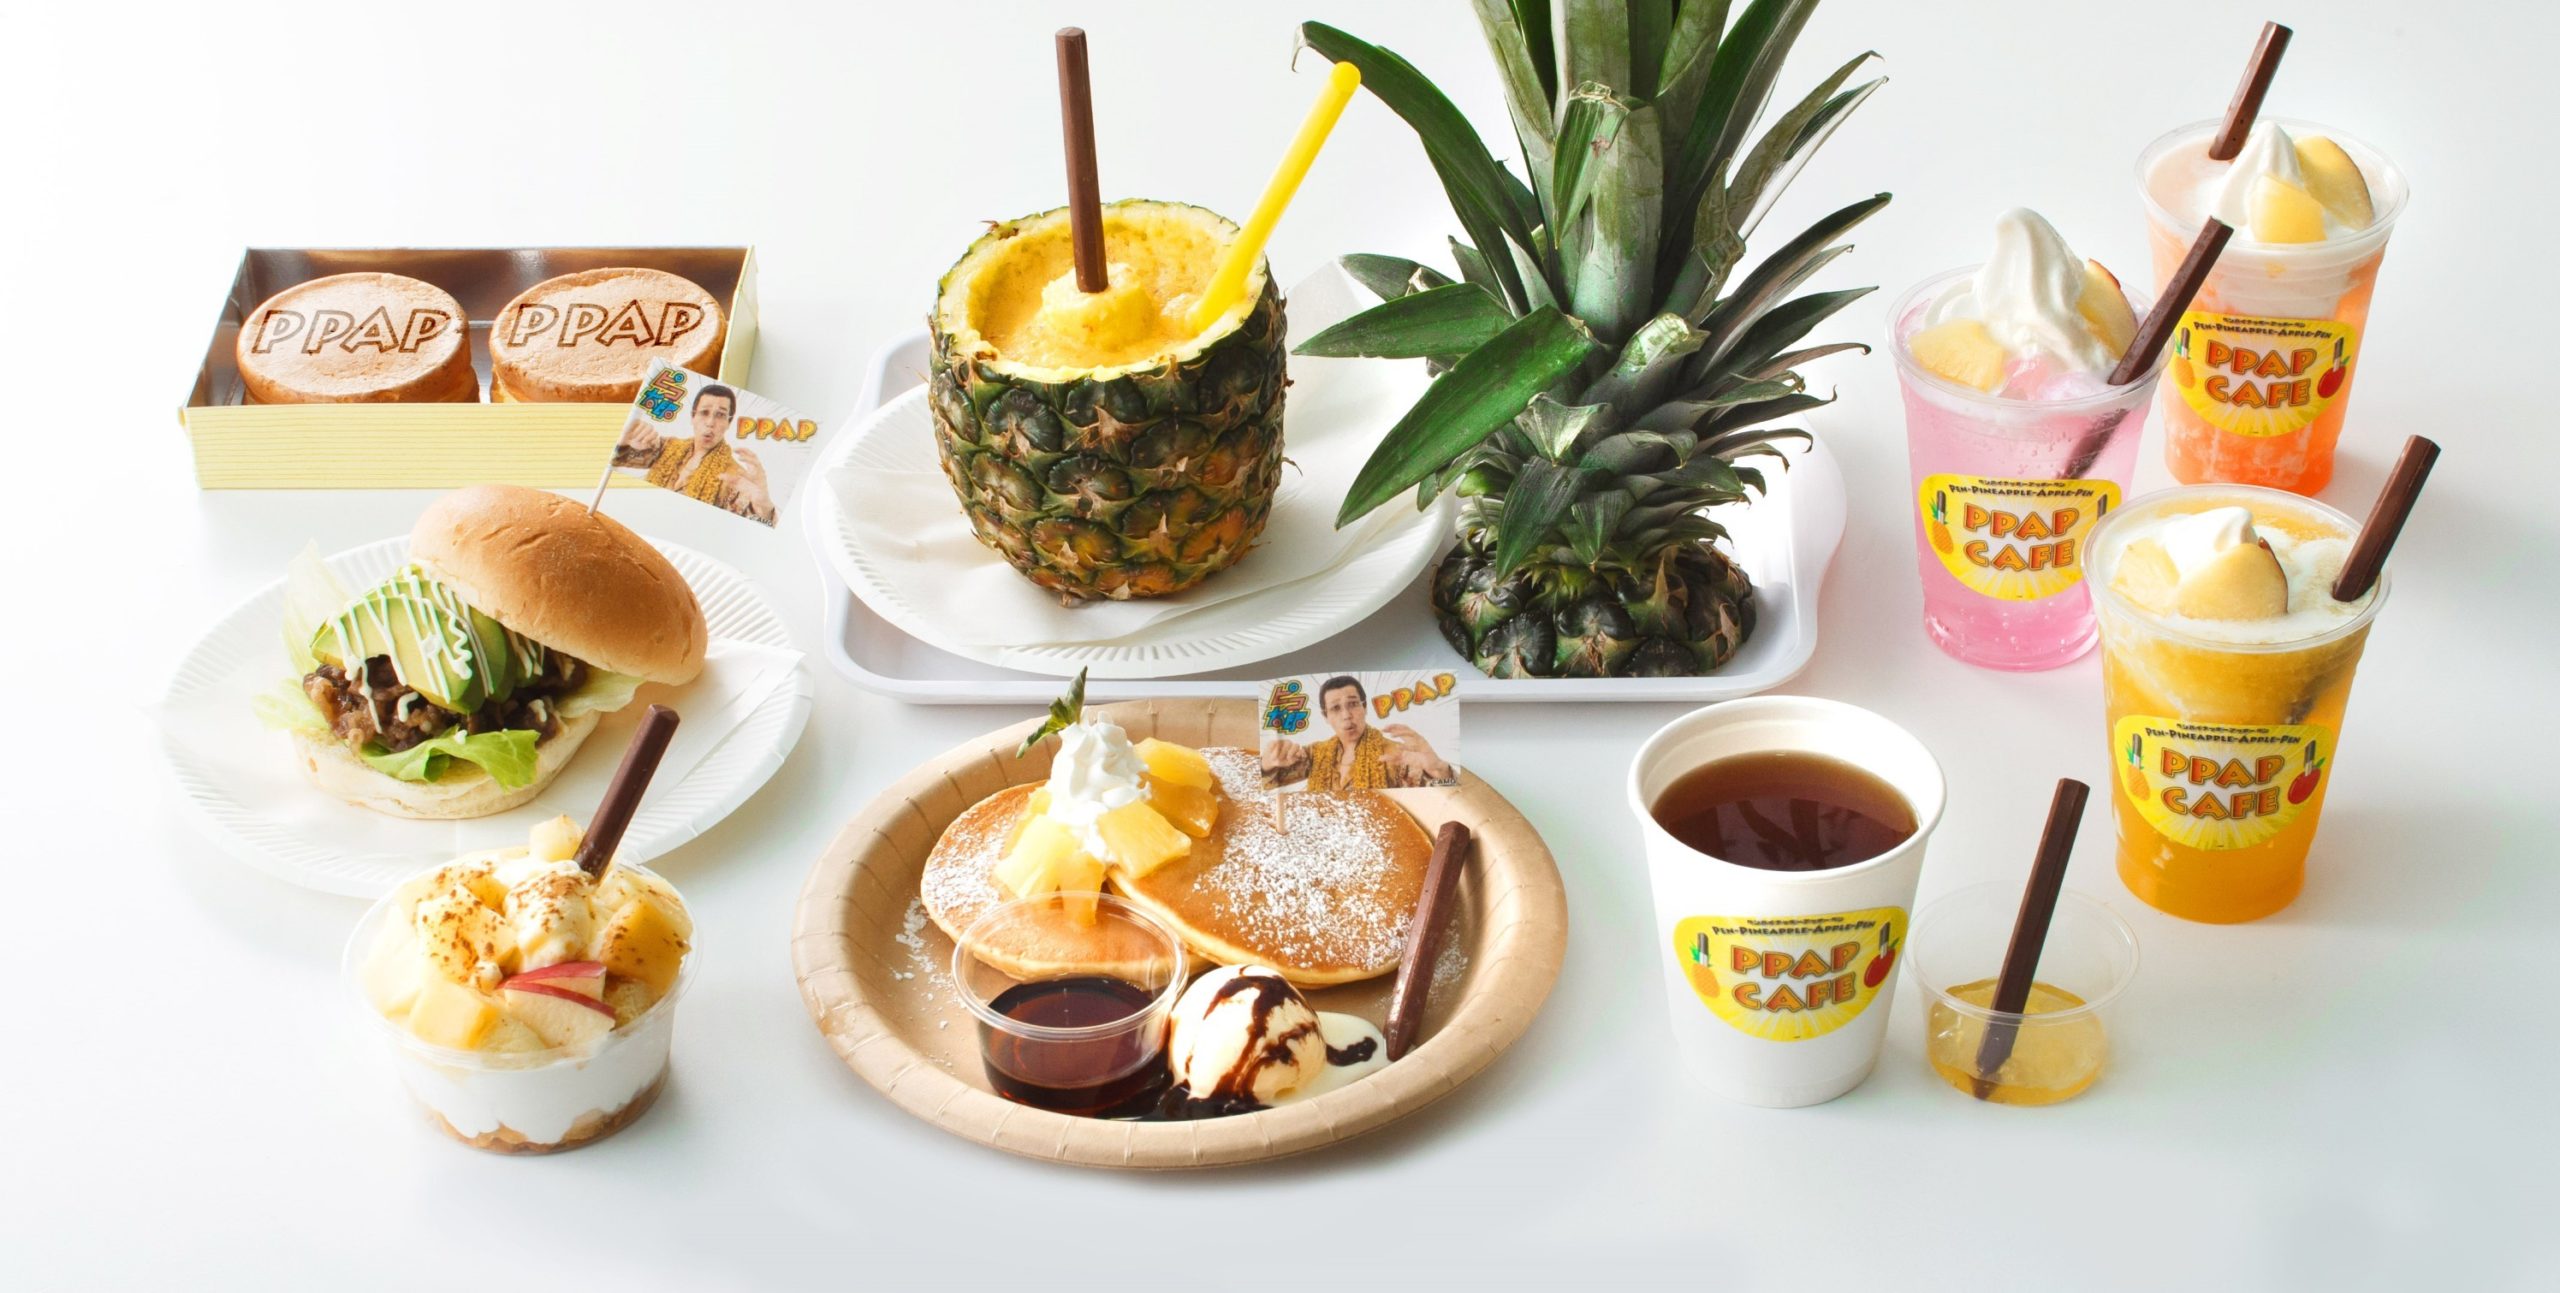 Pen-Pineapple-Apple-Pen Cafe Opening In Japan